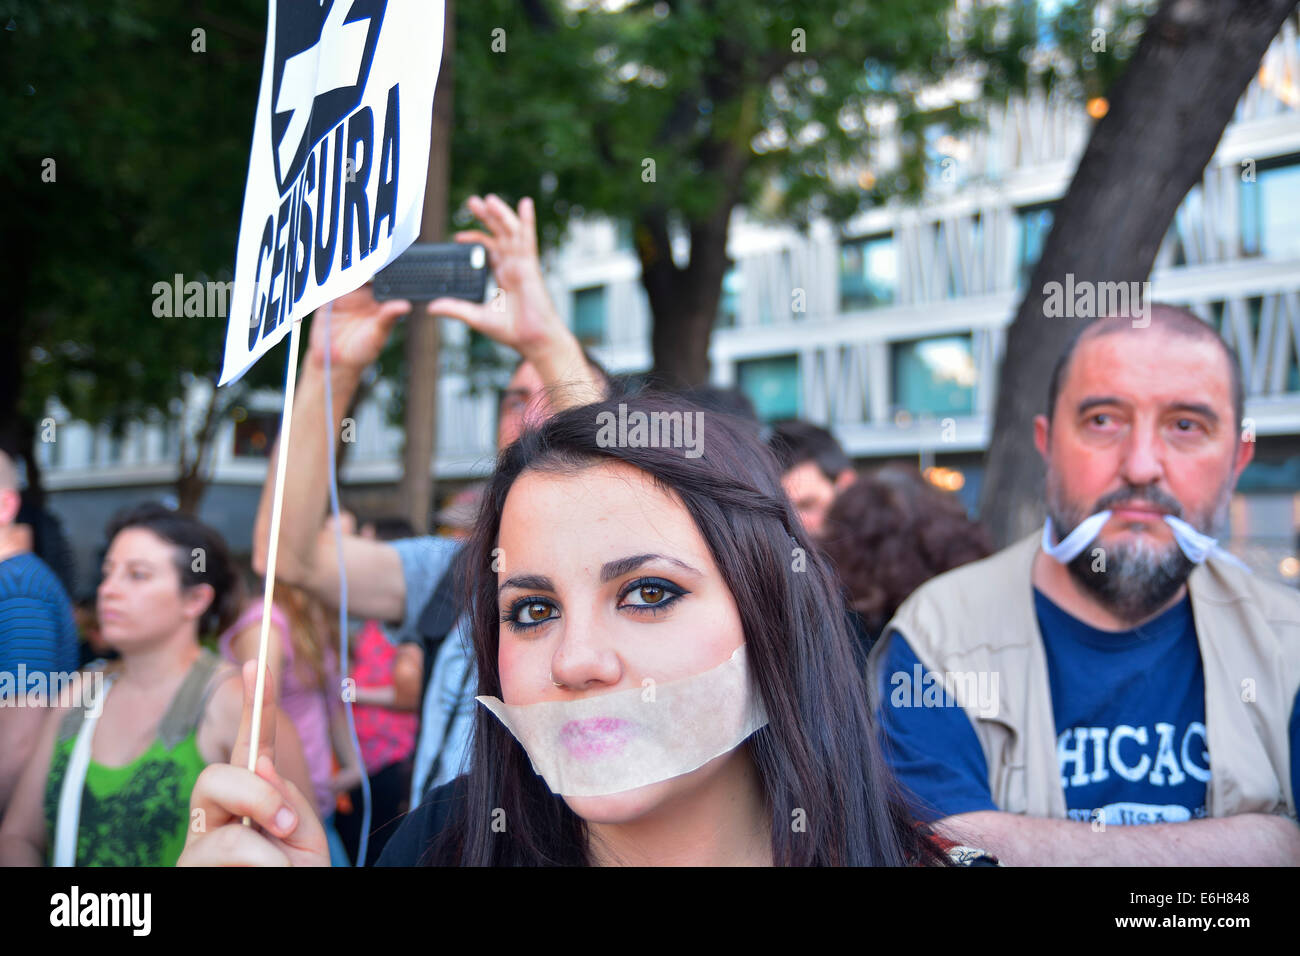 Junge Frau mit ihrem Mund bedeckt Klagen gegen Anti-Protest Recht (Gag) bei einer Demonstration in Madrid am 11. Juli. 2014. Stockfoto